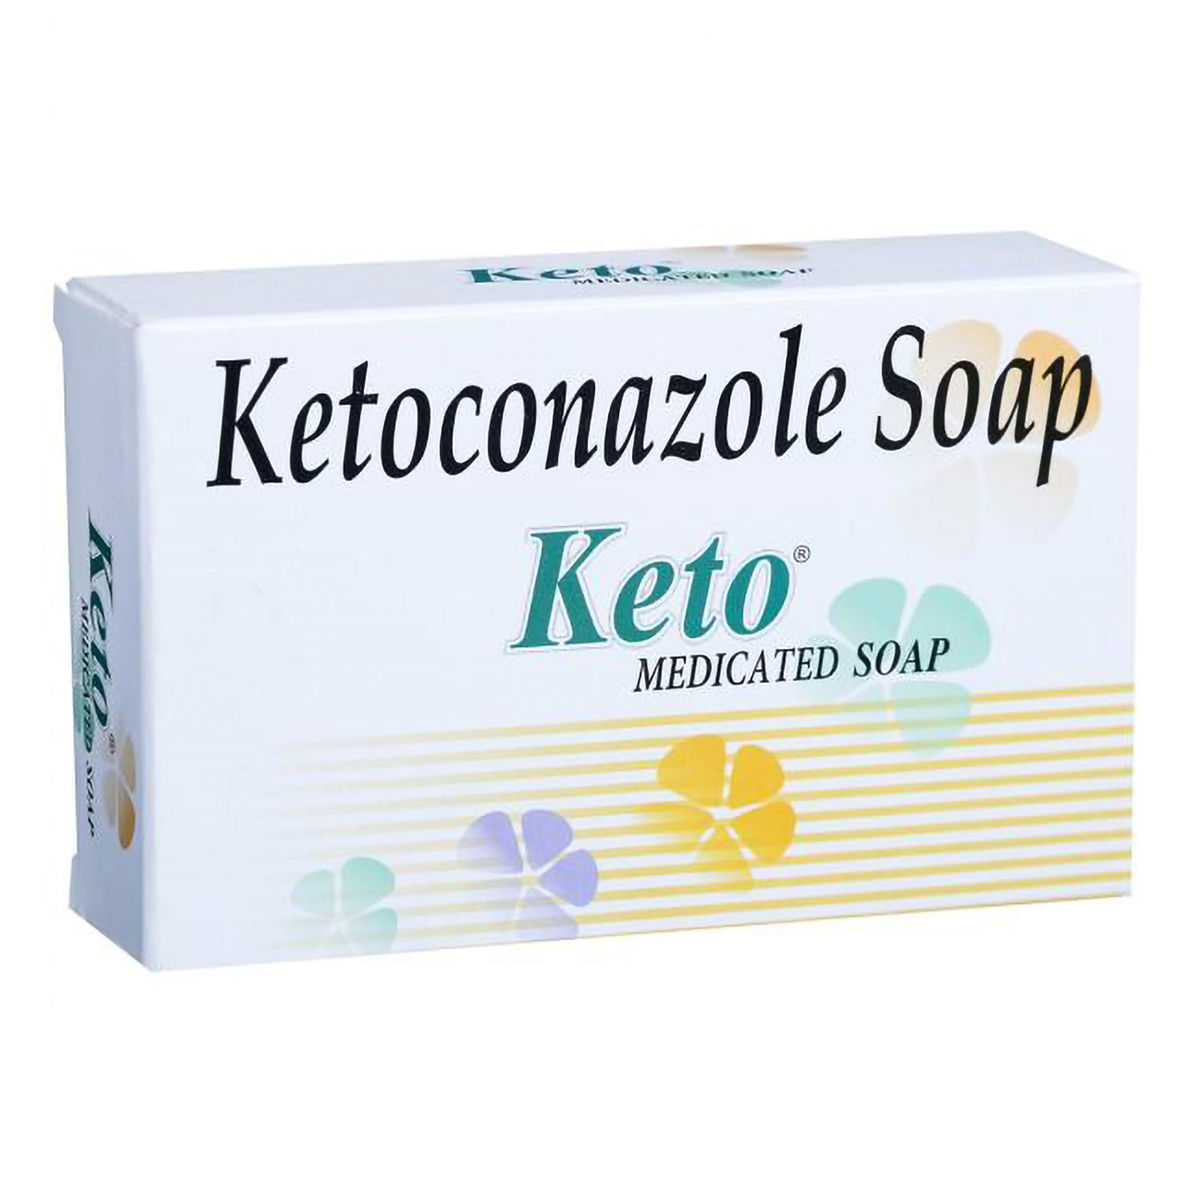 Buy Keto Soap, 100 gm Online